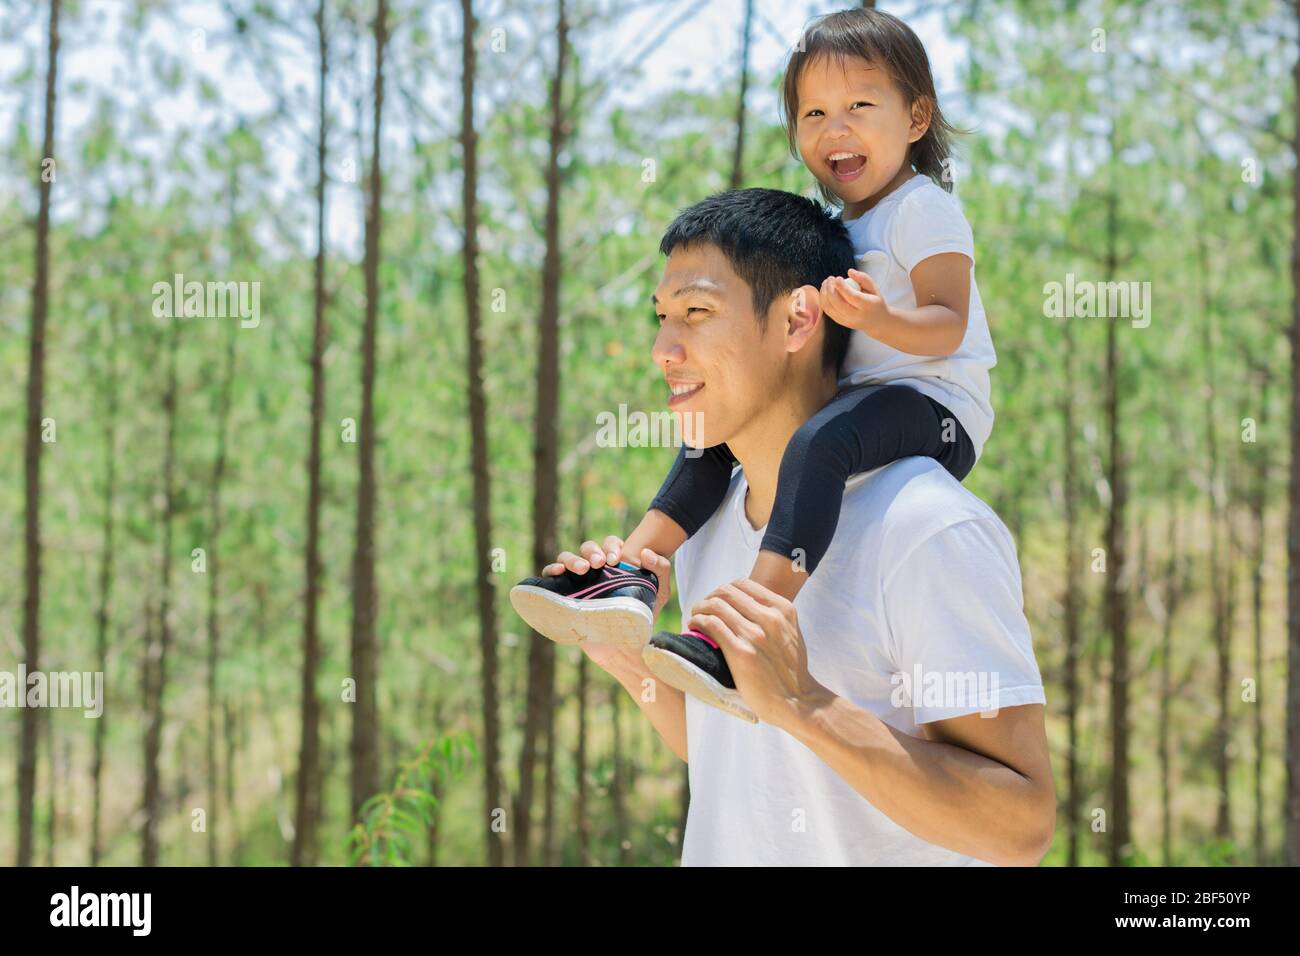 Eltern und Kinder wandern im grünen Wald. Papa fürsorgliches Kind auf seinen Schultern, Spaß haben. Lächeln und Lachen zusammen. Liebe zur Familie. Stockfoto